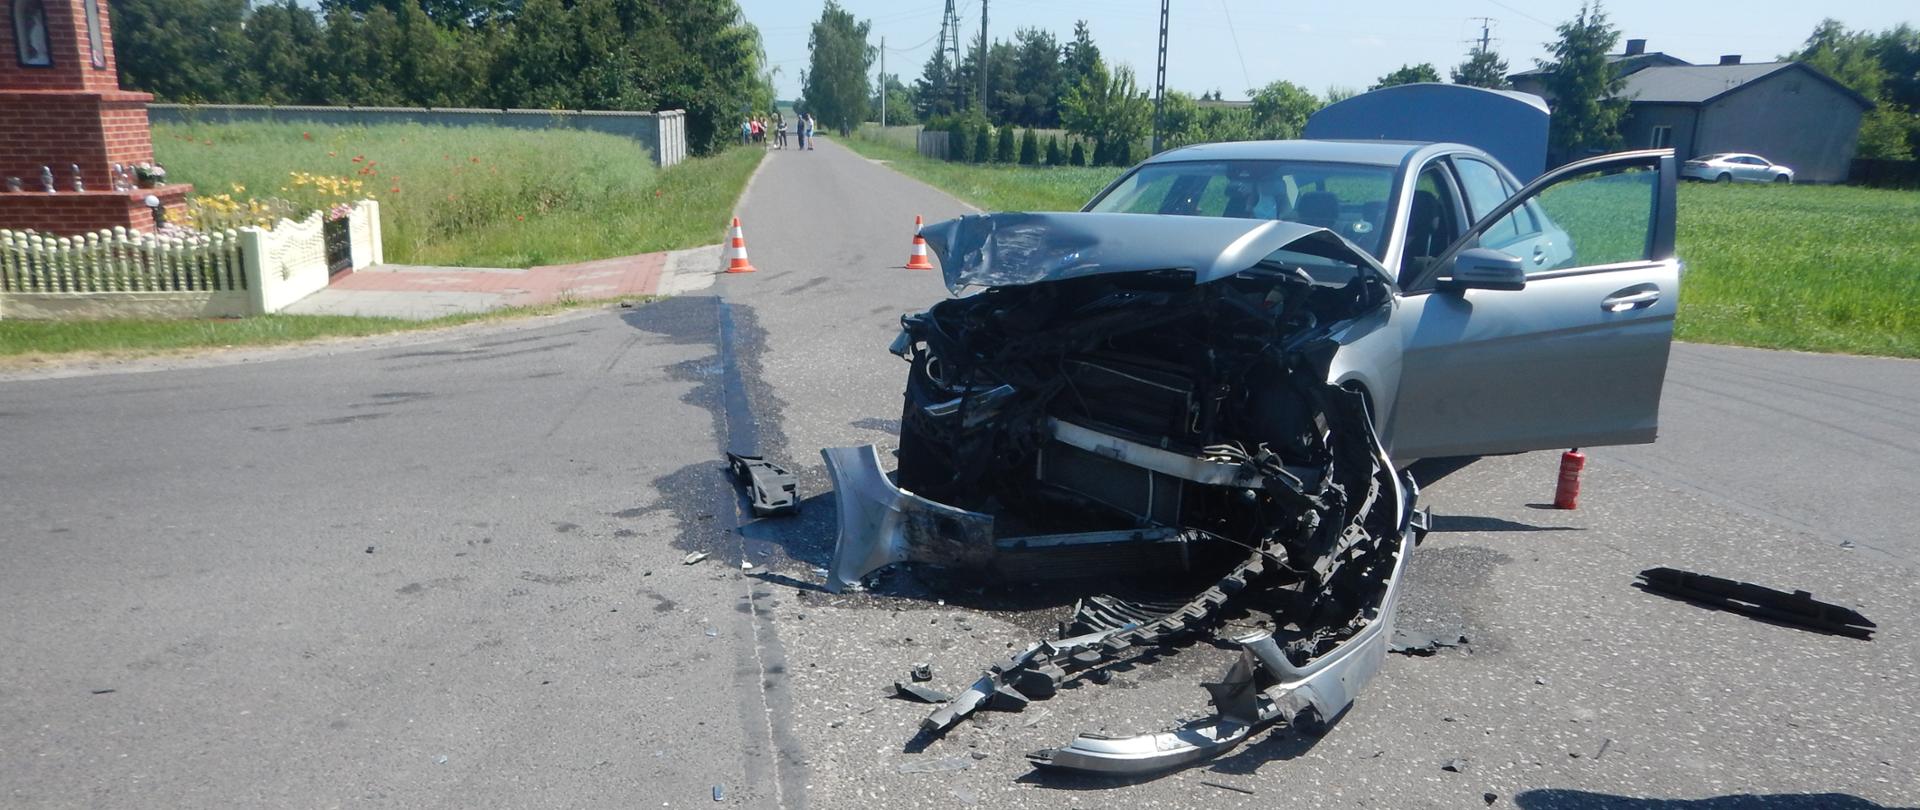 Zdjęcie przedstawia srebrny samochód osobowy, który brał udział w wypadku drogowym. Samochód ma uszkodzony przód.